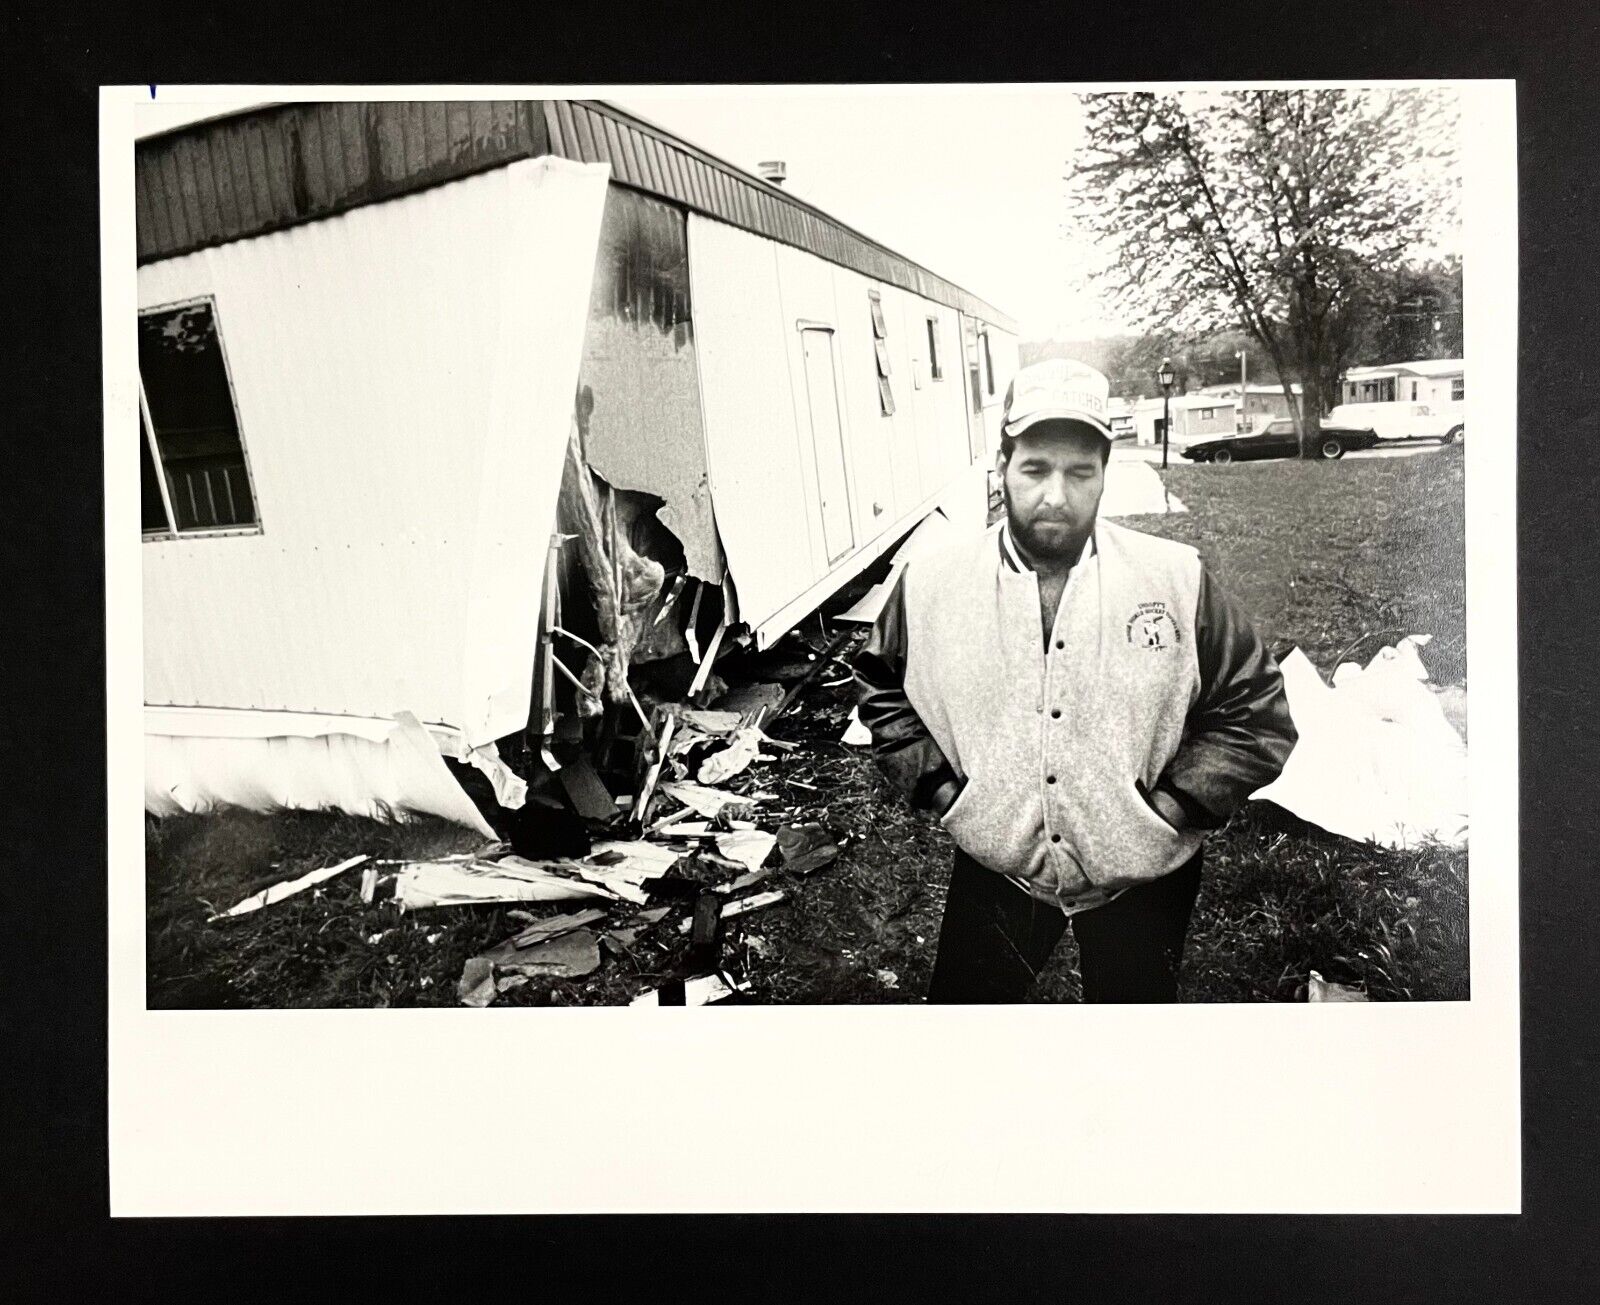 1989 Independence MO Trailer Mobile Home Car Crash US 40 Arends VTG Press Photo